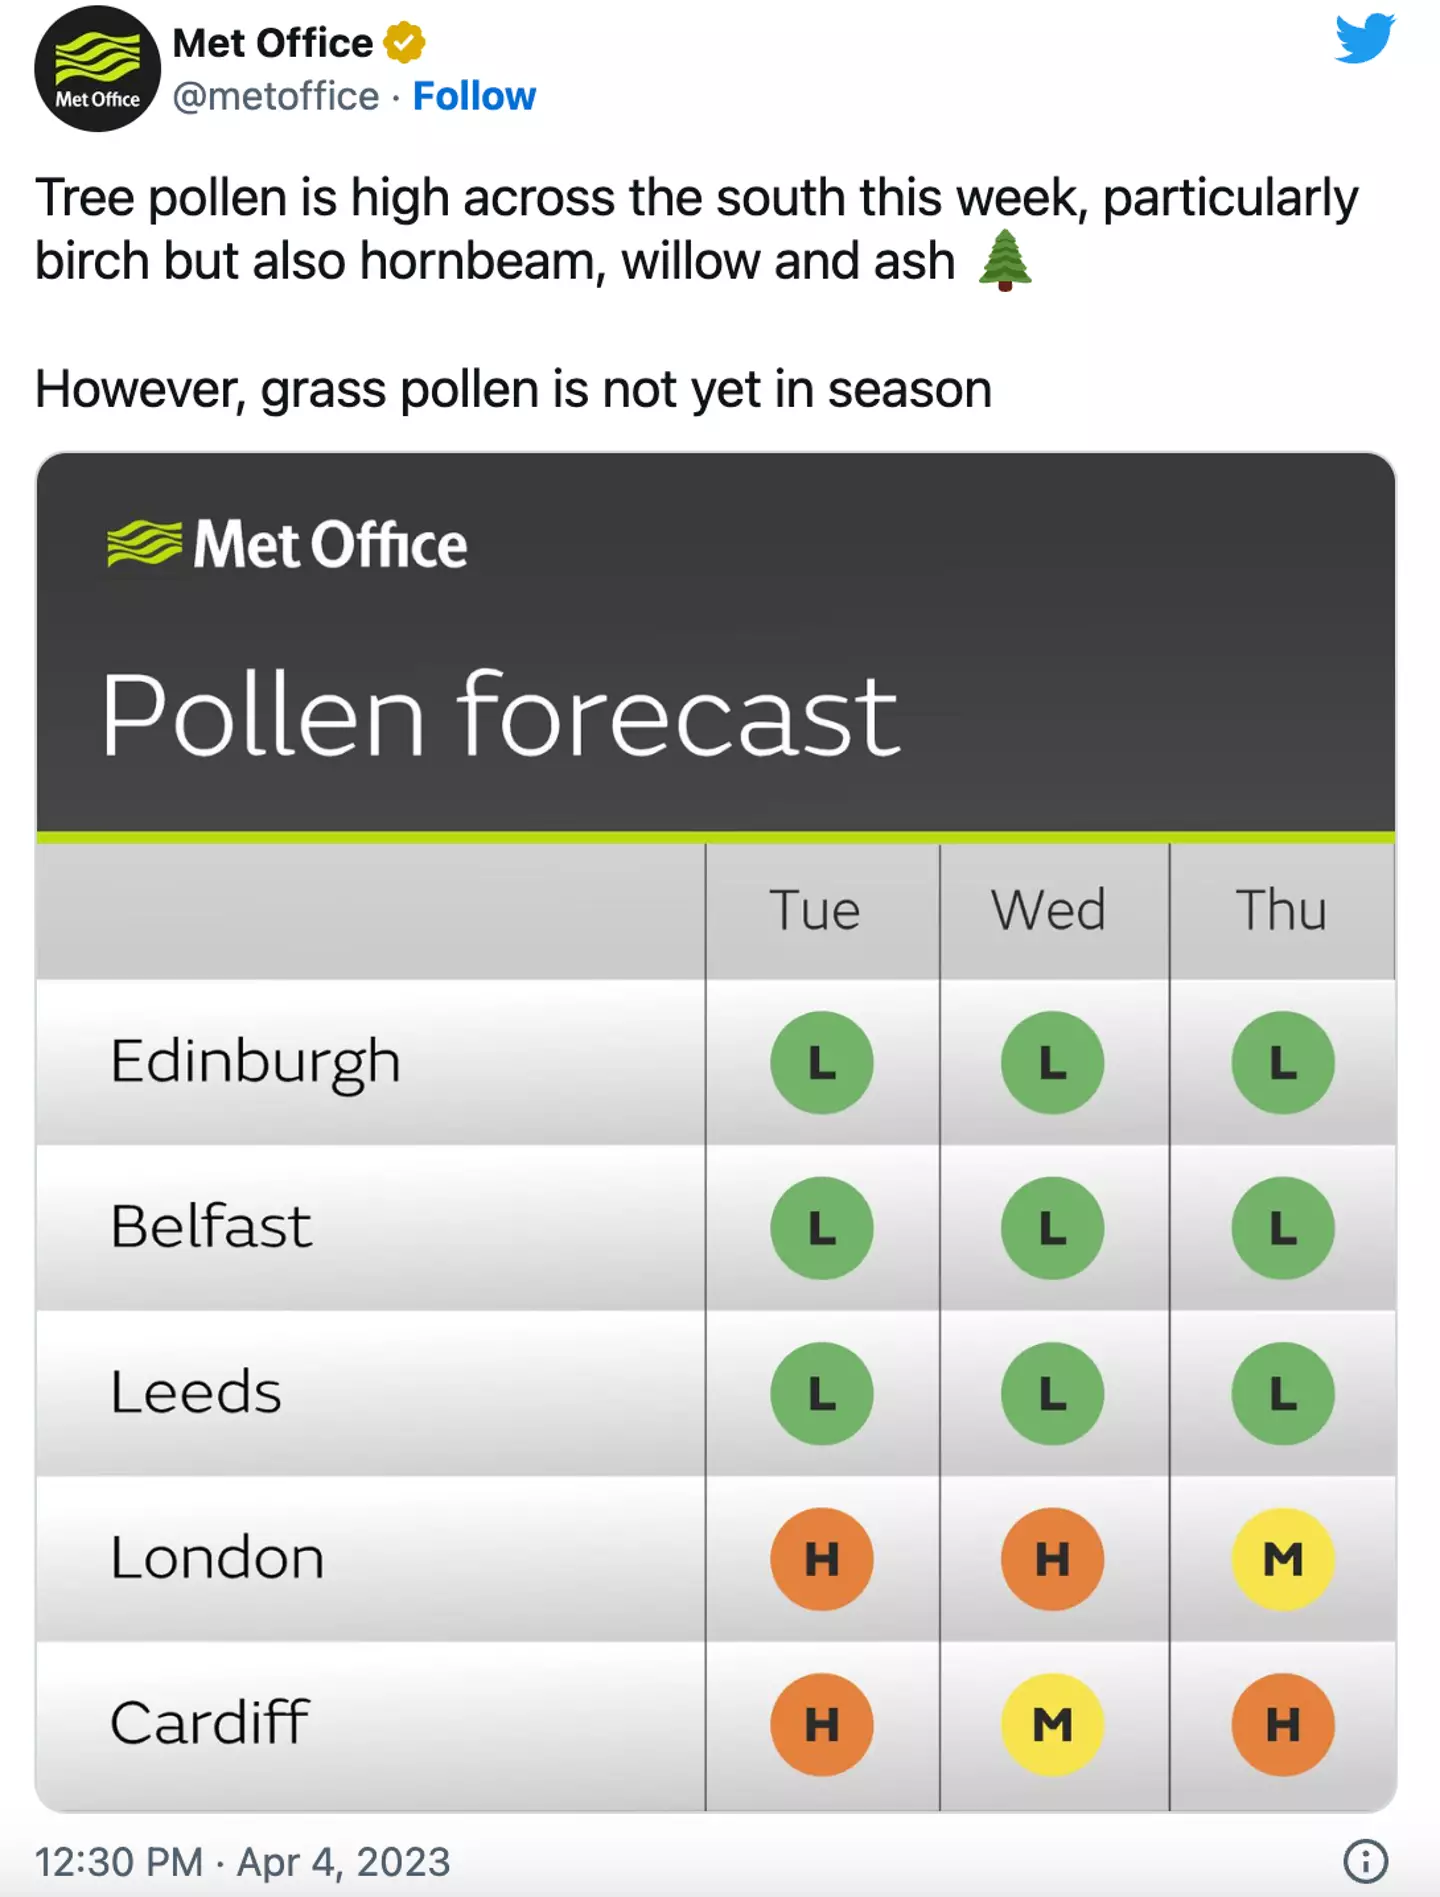 Tree pollen season is now in full swing.